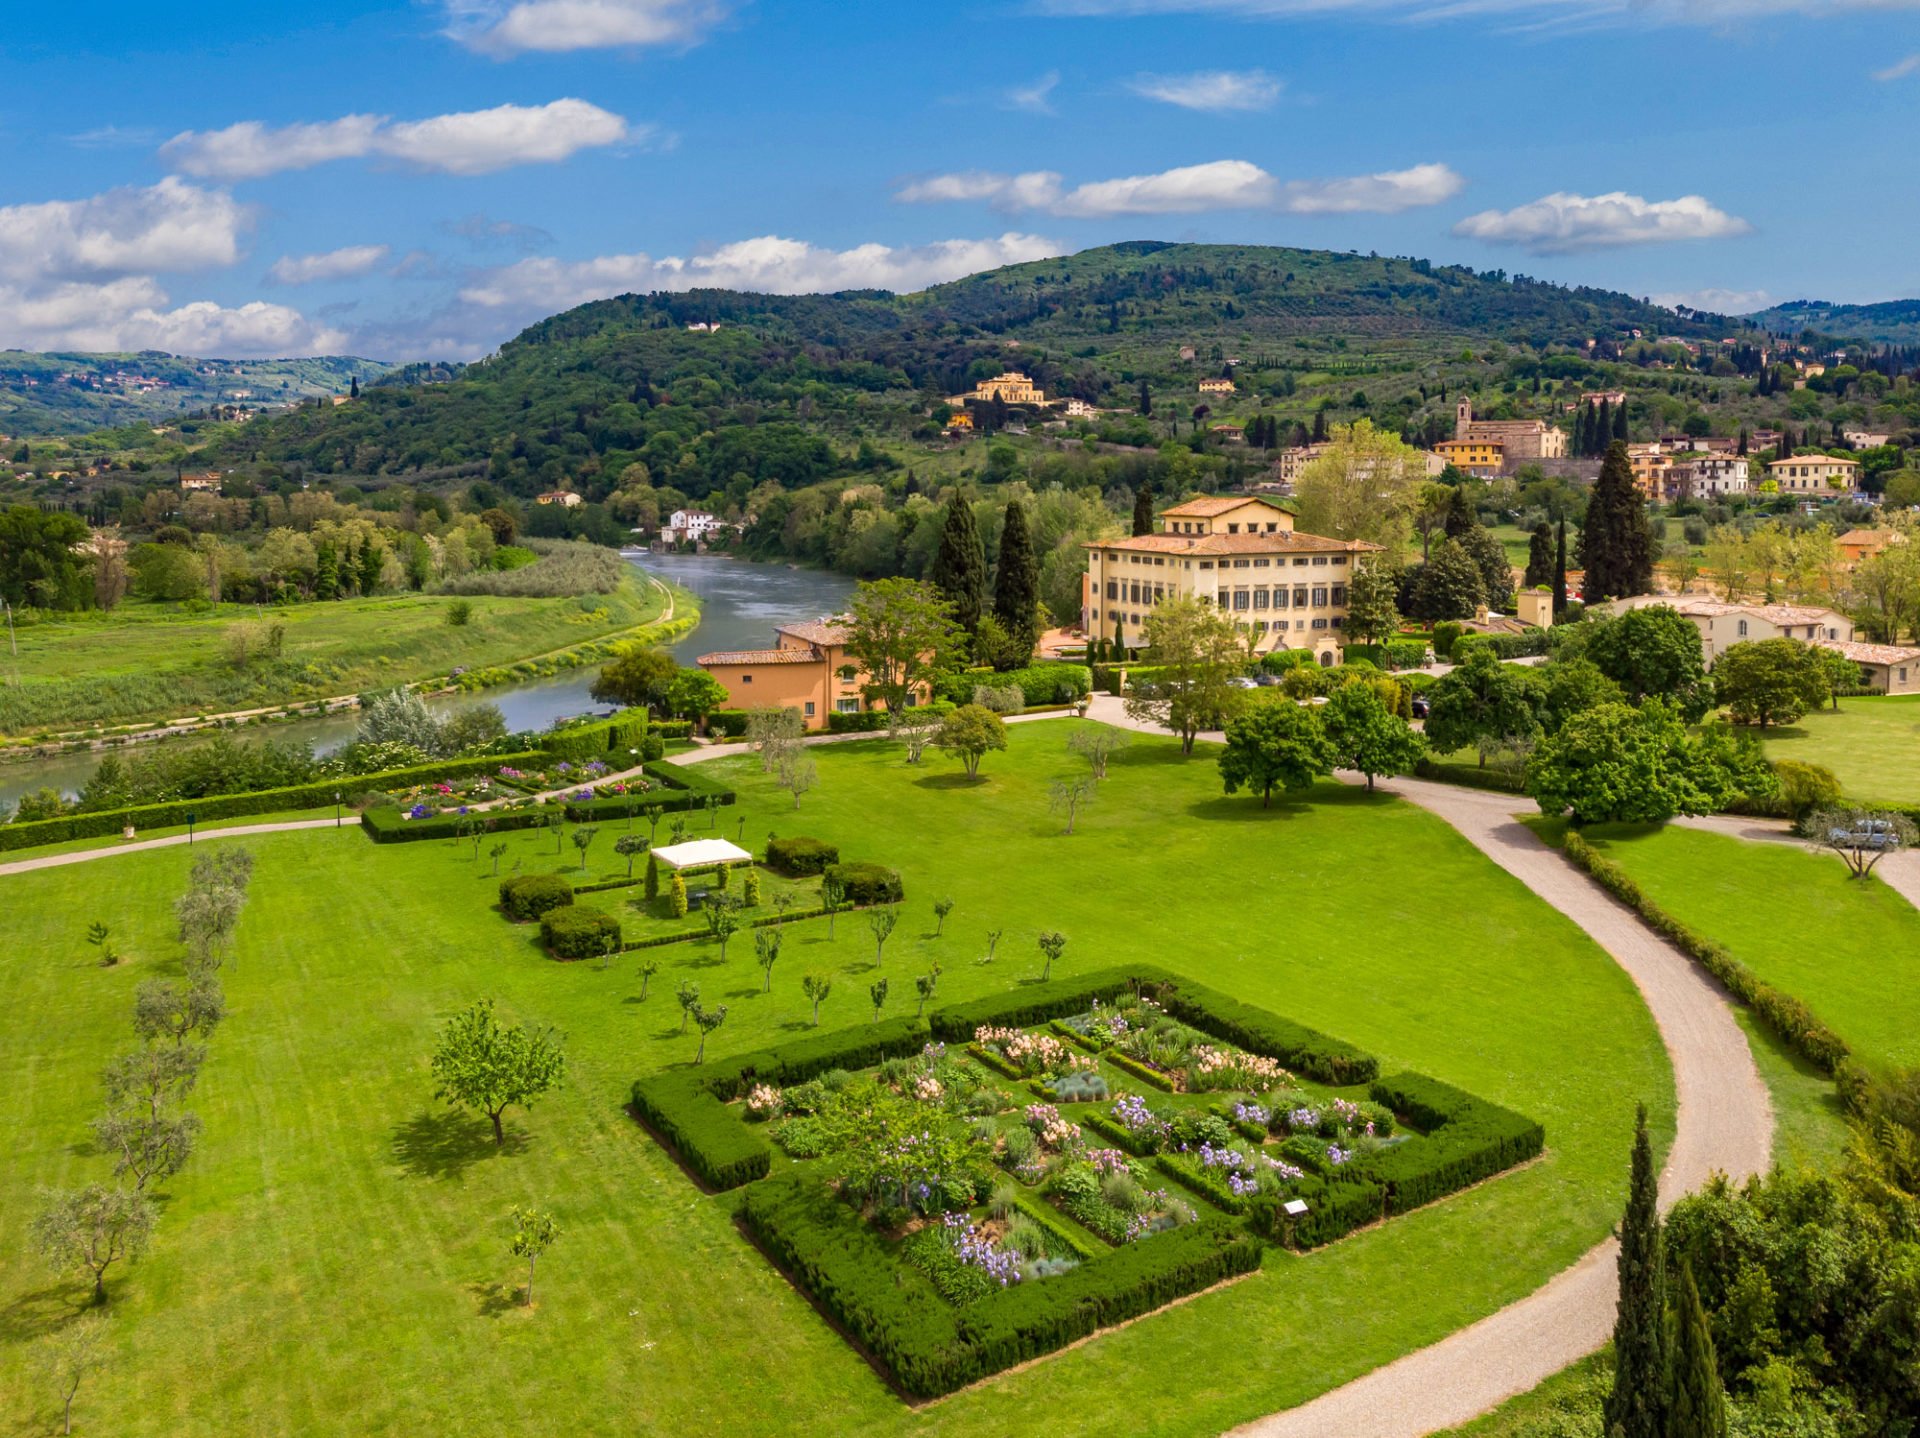 Villa-La-Massa-garden-and-Arno-view-1920×1438